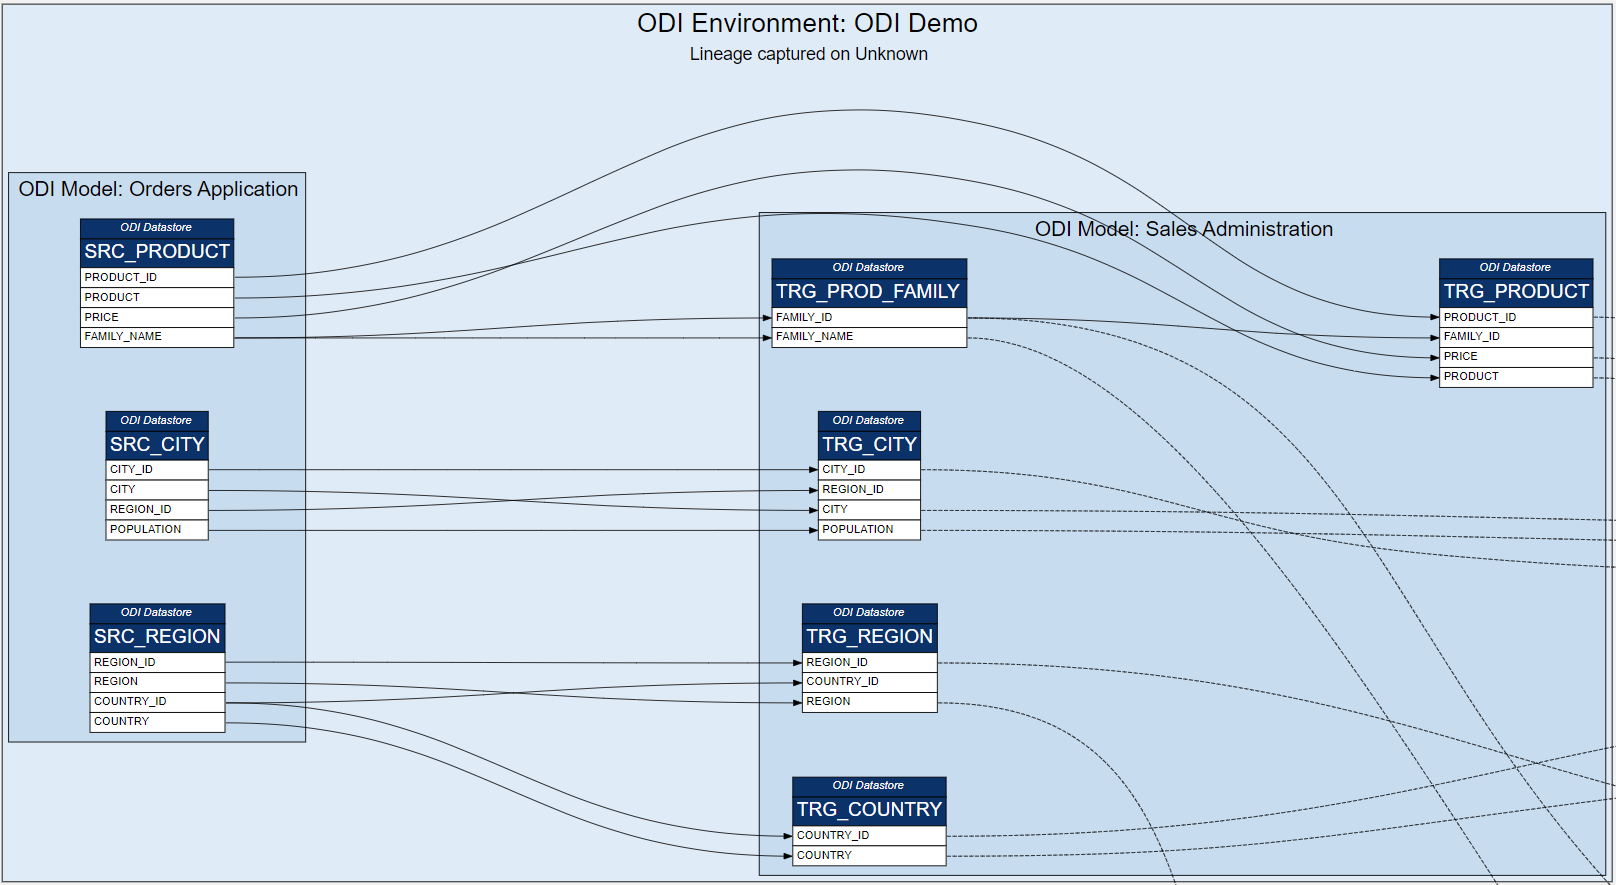 ODI Environment ODI Lineage Demo